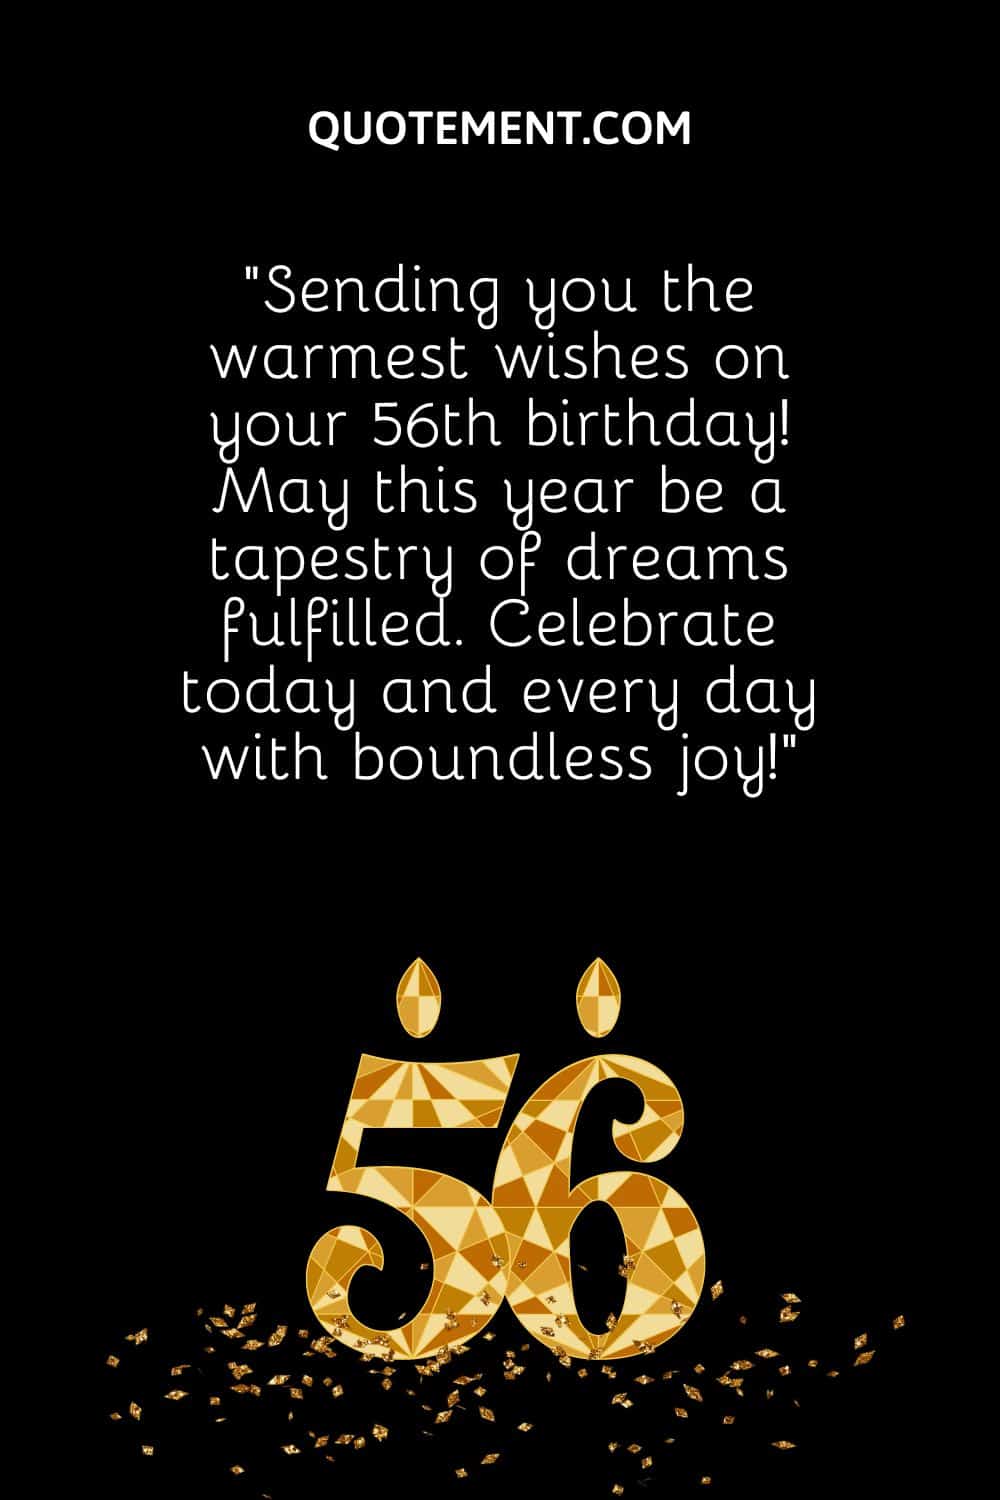 el número 56 un papelito de confeti que representa una bonita manera de decir feliz 56 cumpleaños